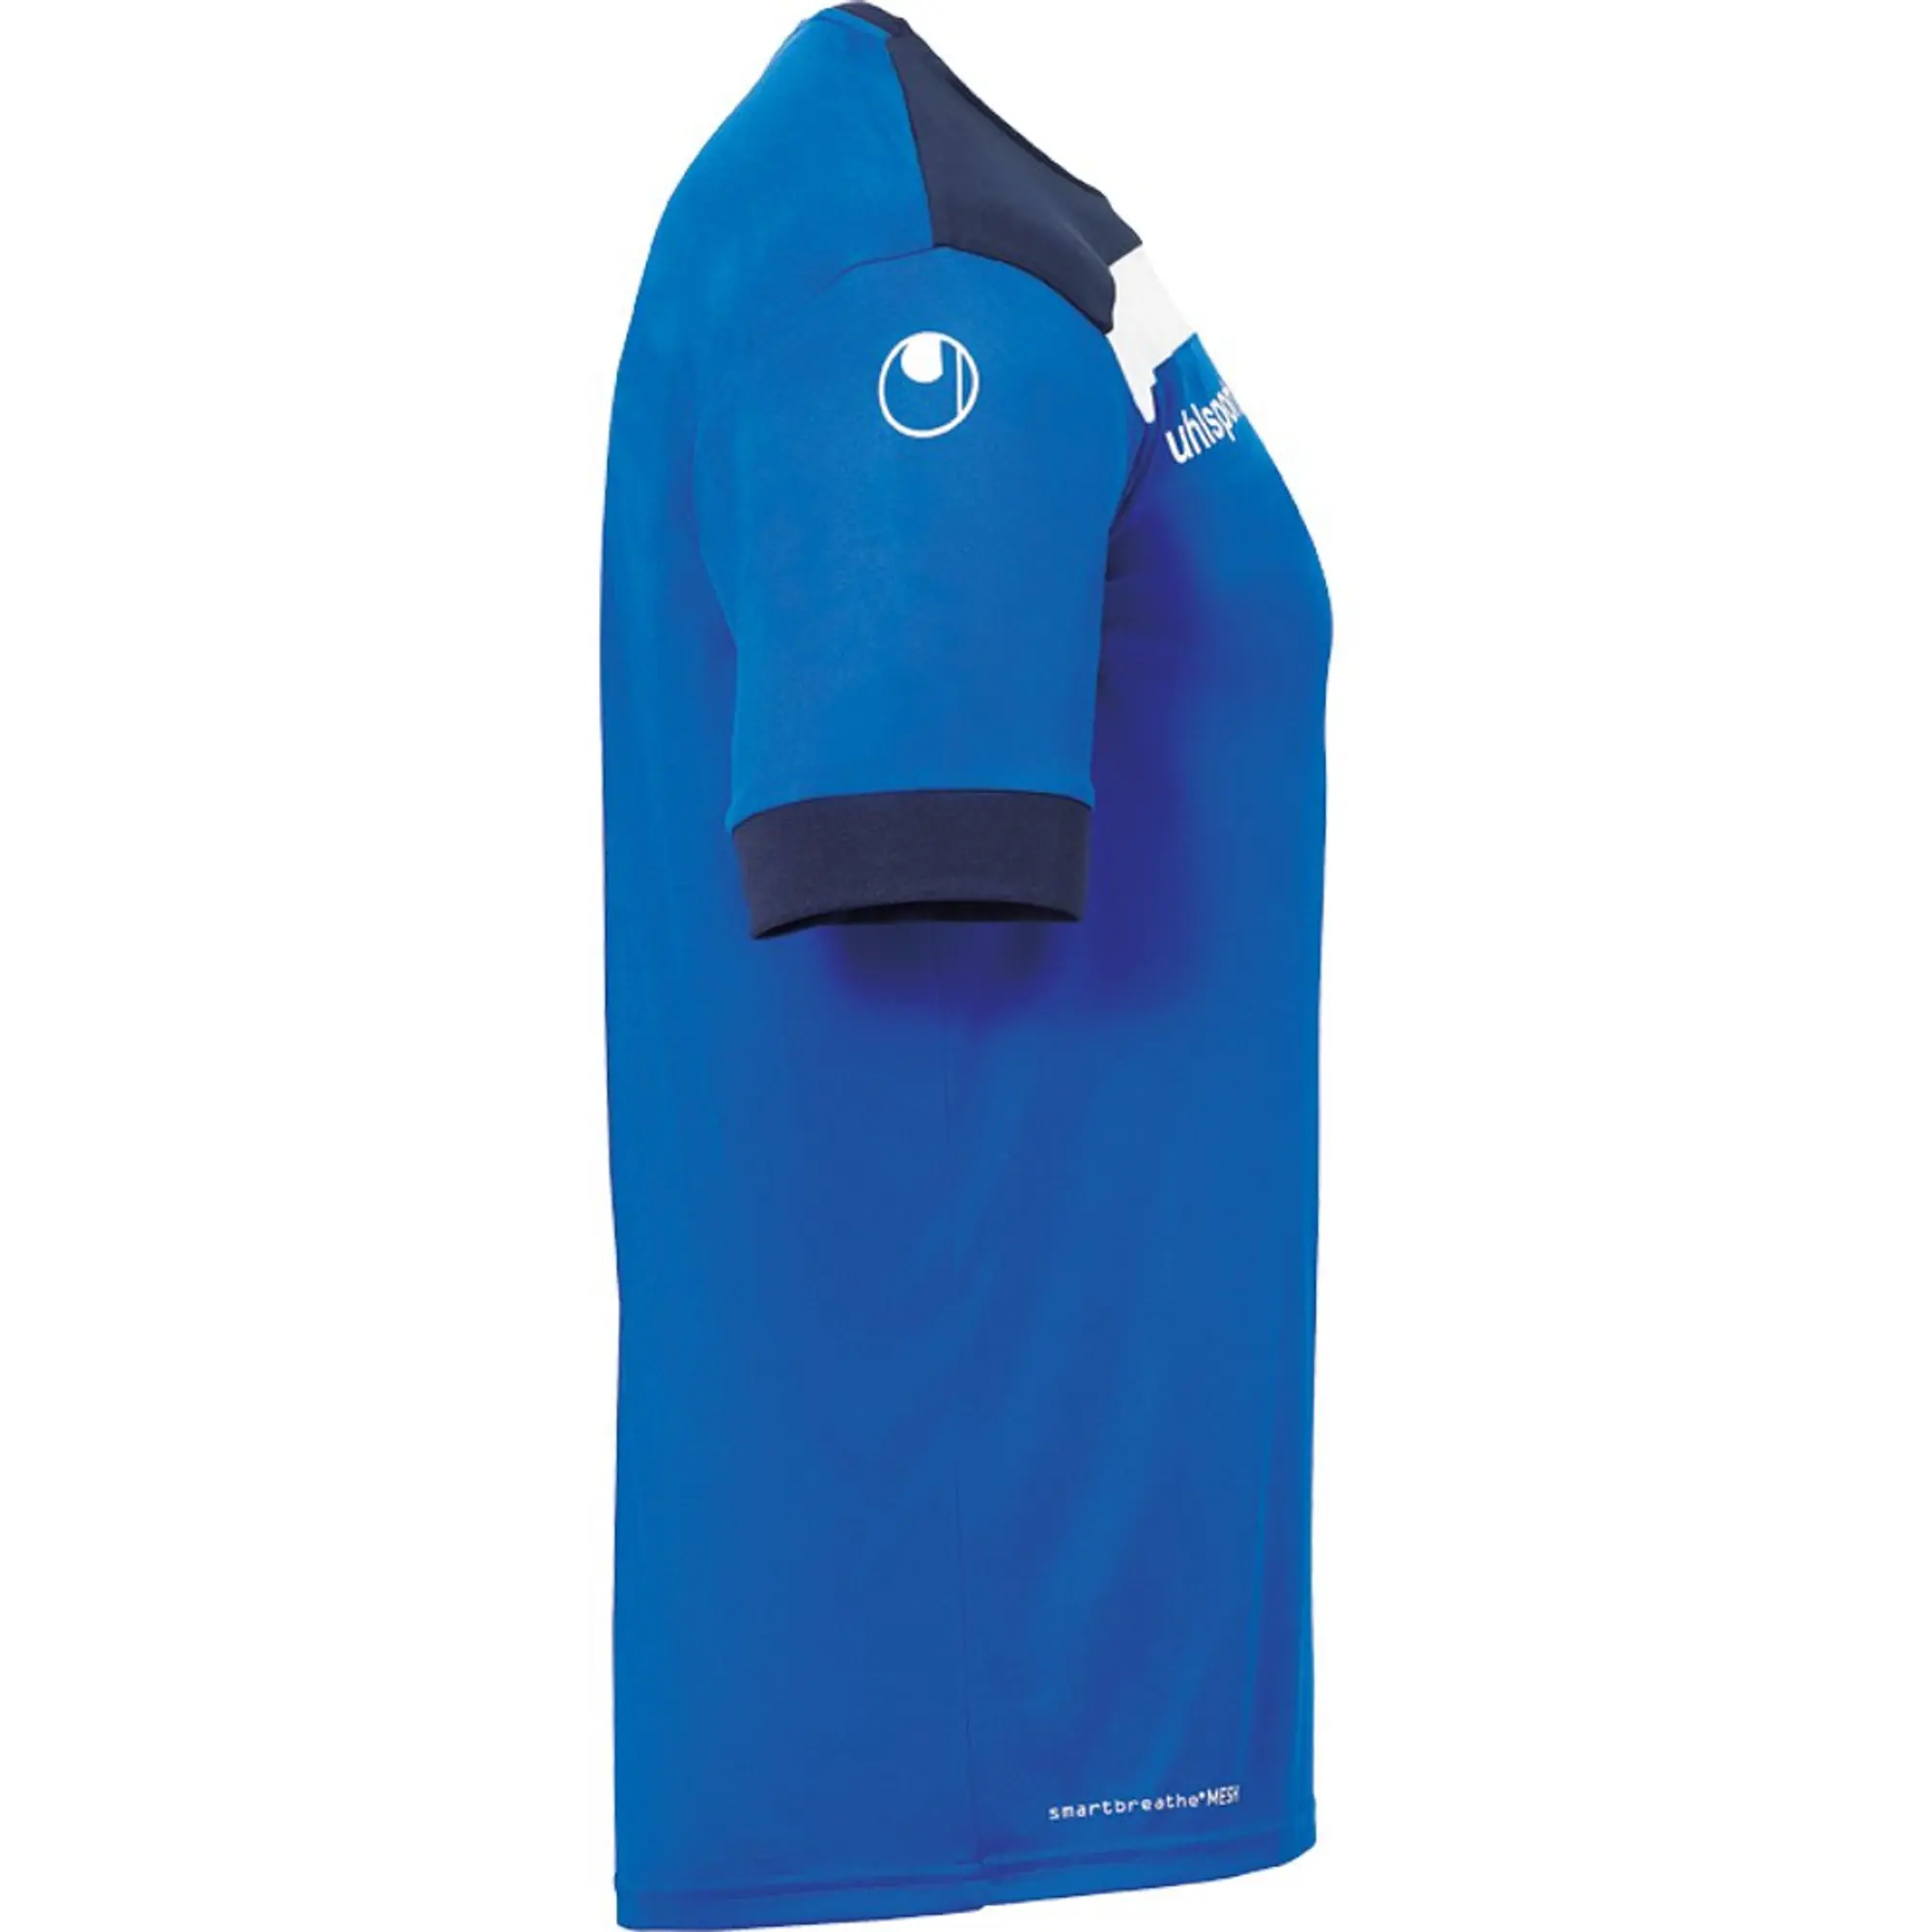 Uhlsport Offense 23 Short Sleeve T-shirt  - Blue